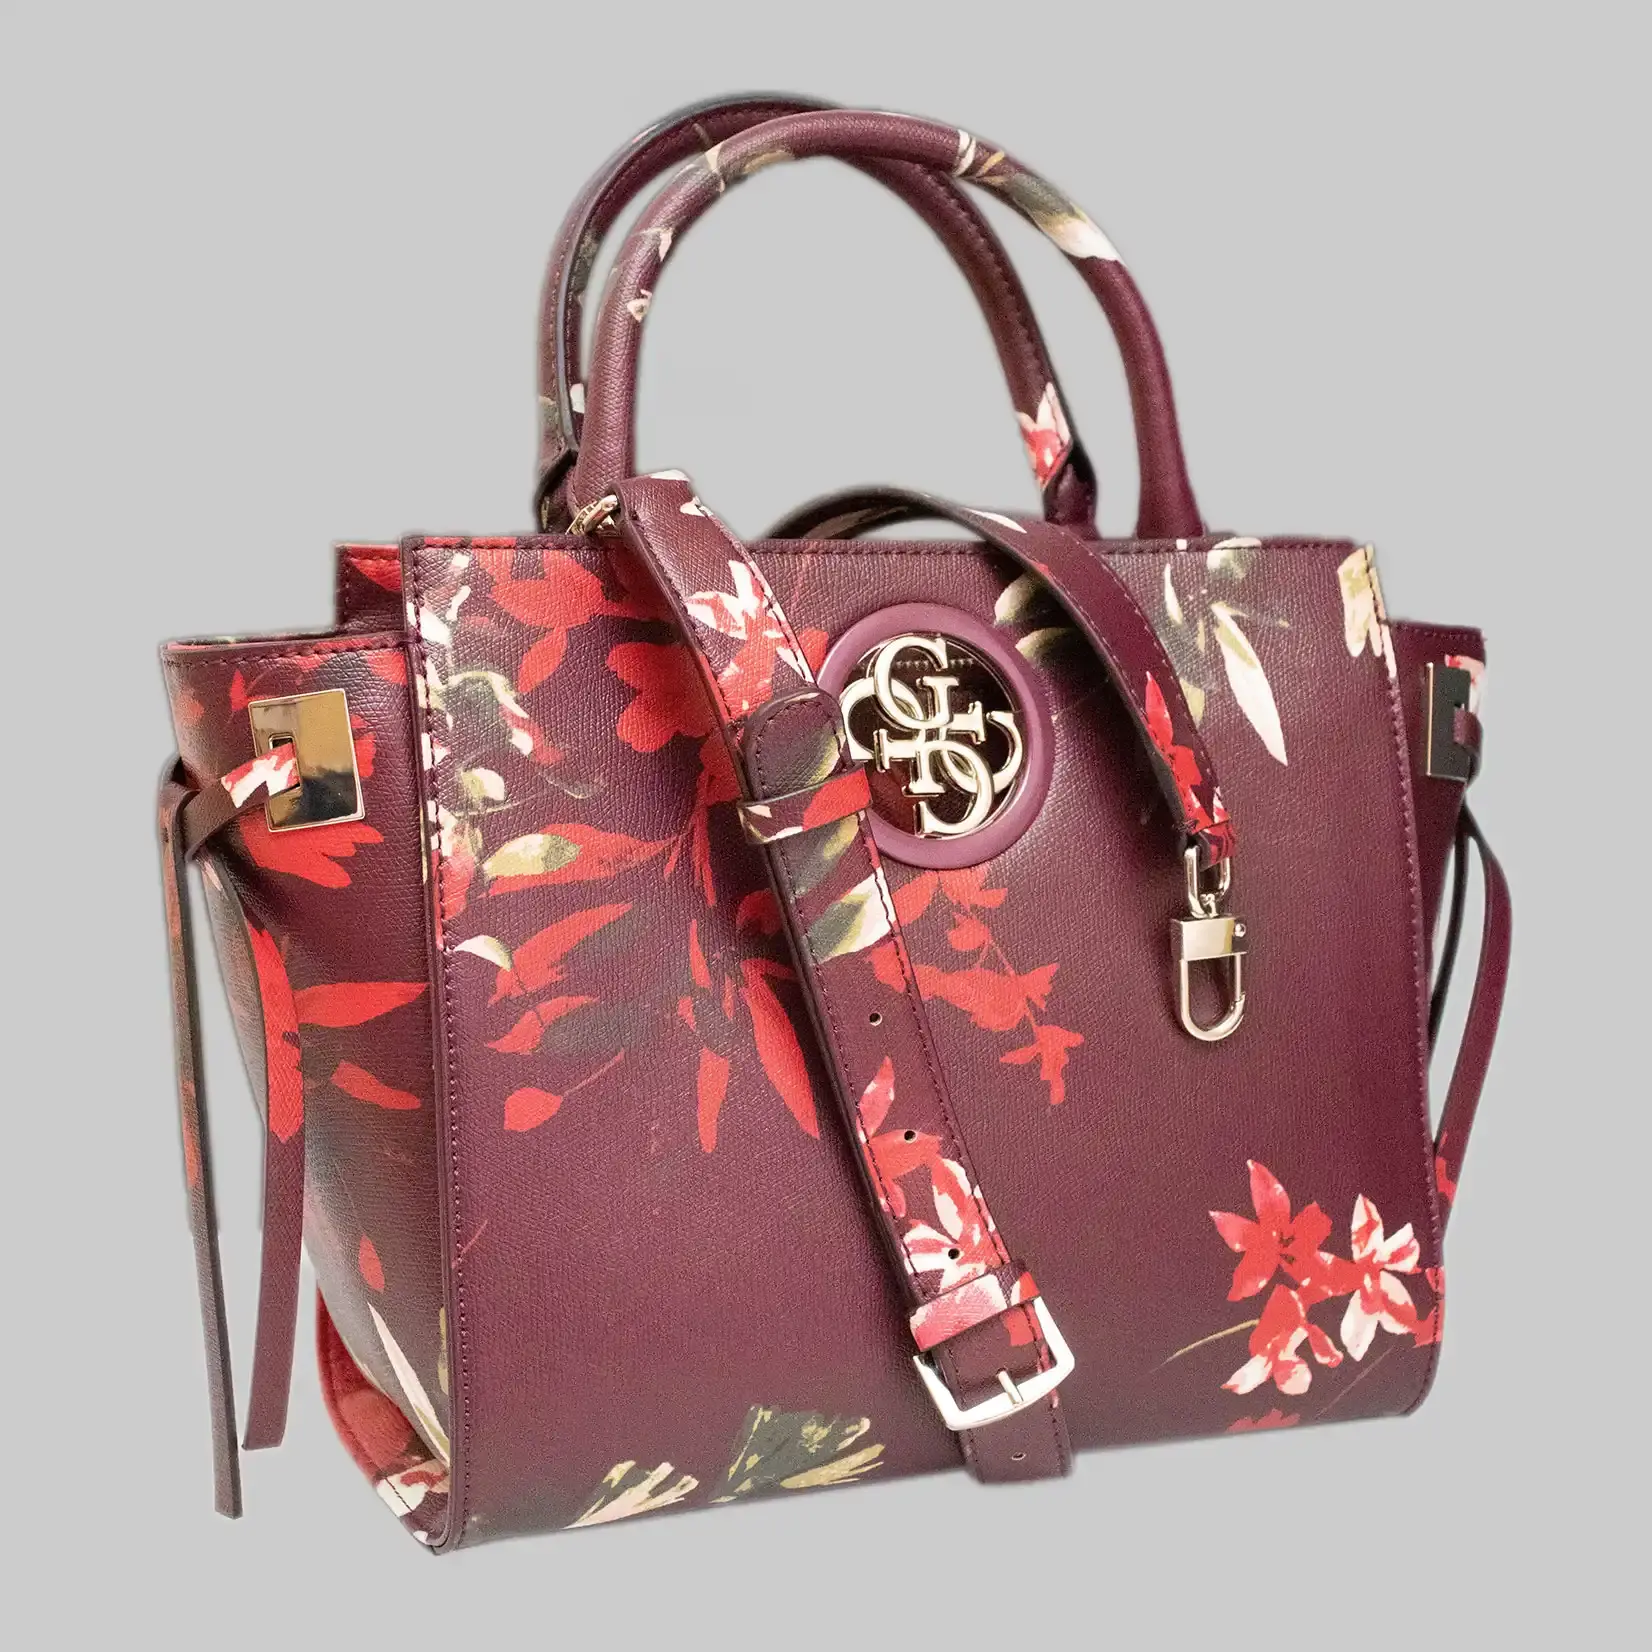 Guess Handtasche Damen Kunstleder -Rot - Blumen Muster - 4 Große G als Logo Vorderseite - Reißverschluss